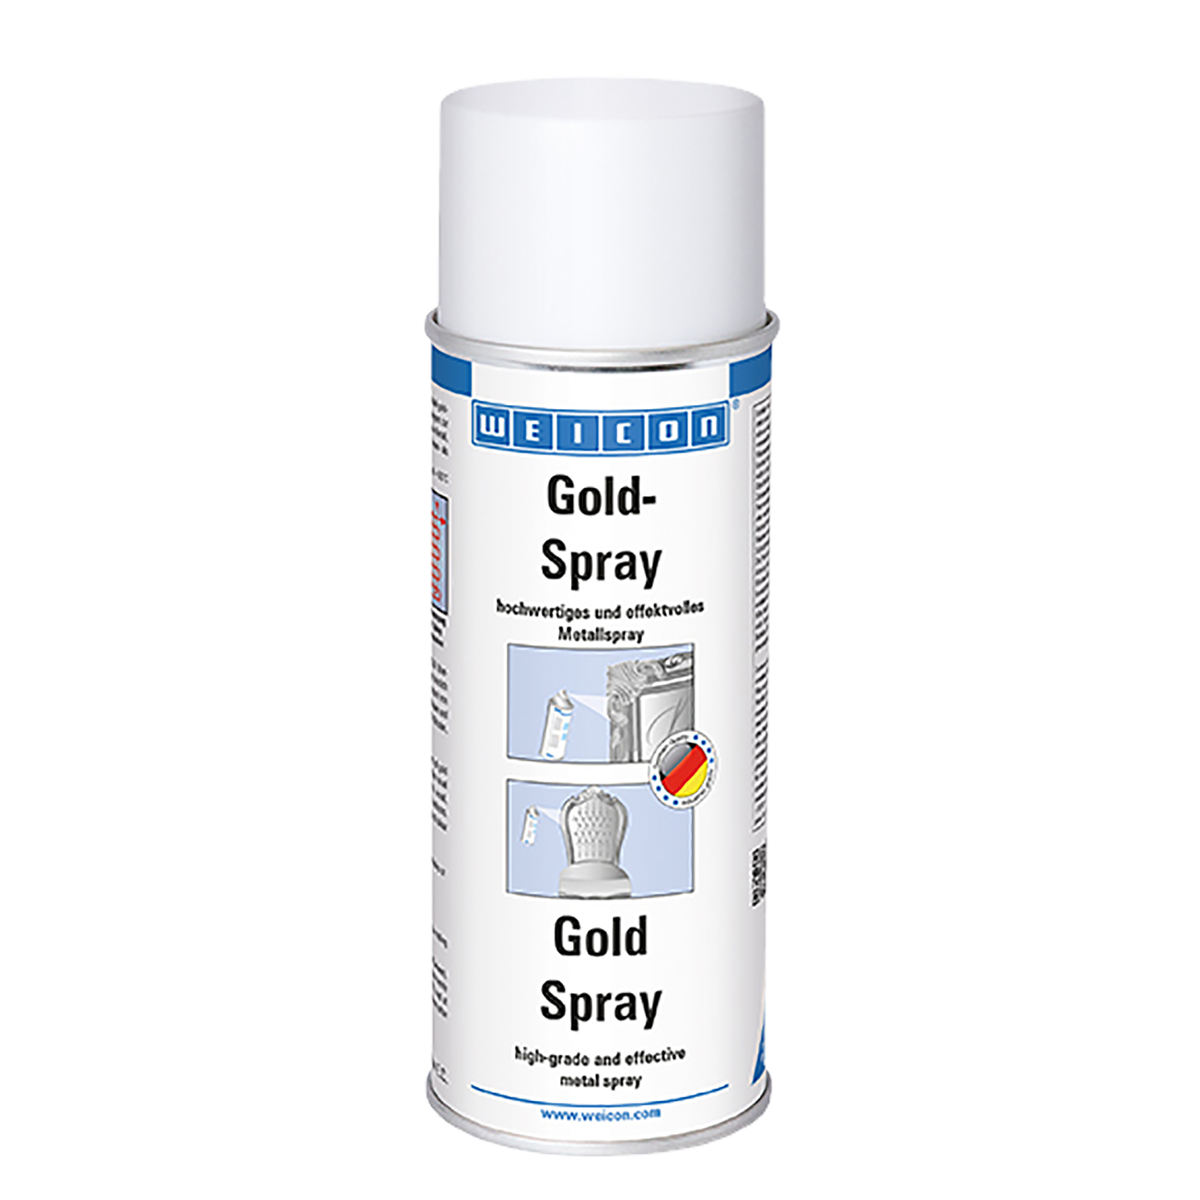 Weicon Gold Spray Metal Spray 400ml Aerosol Can